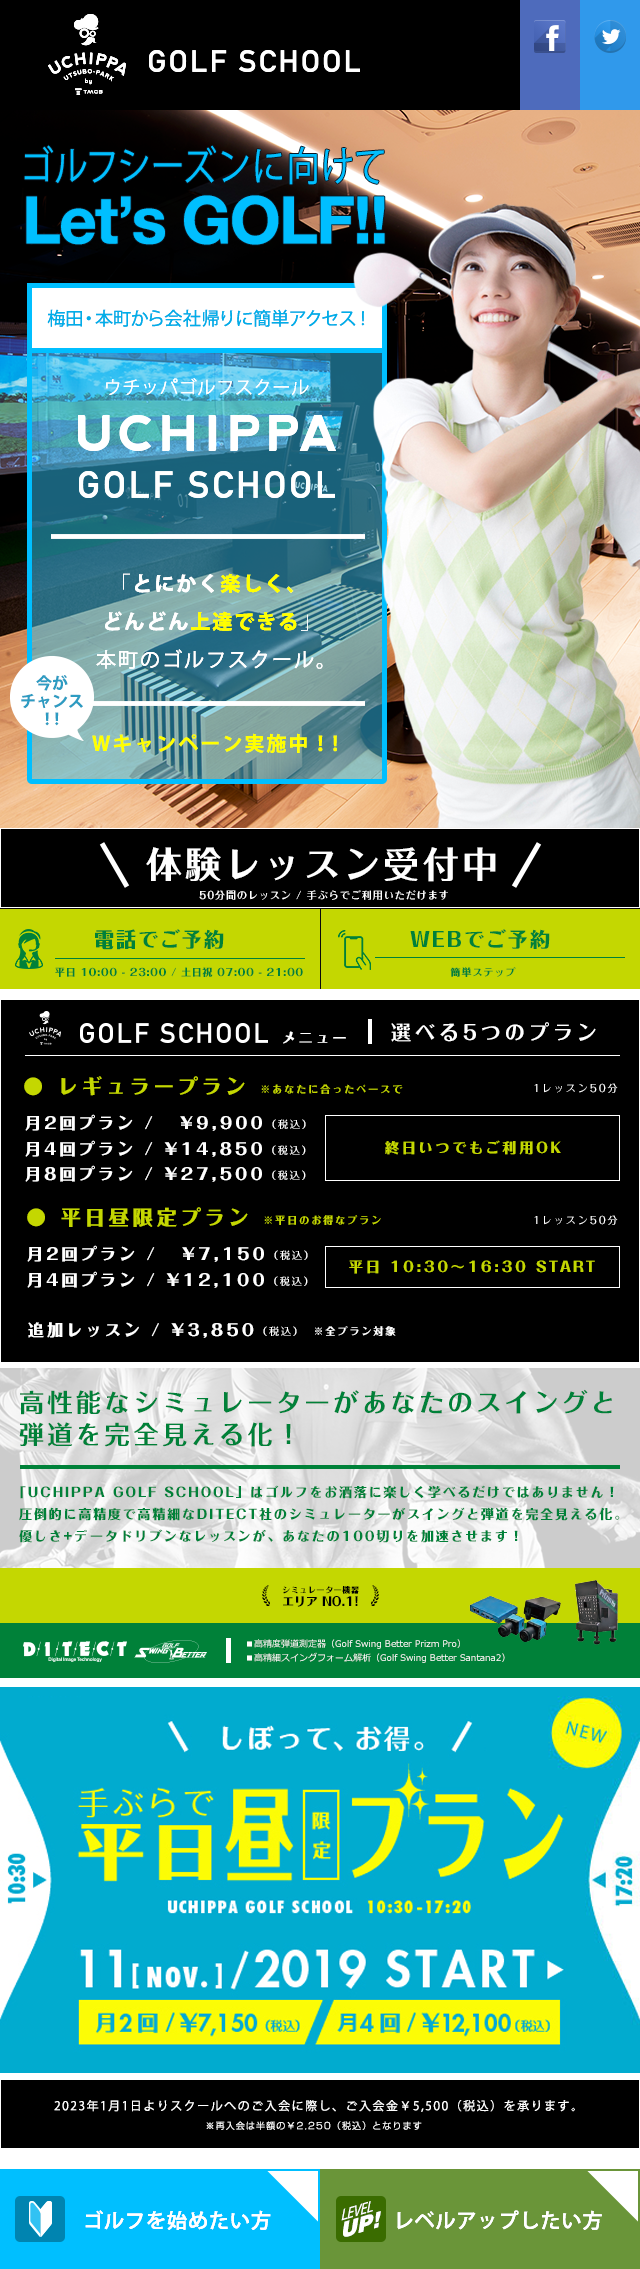 ゴルフシーズンに向けて Let's GOLF!! 梅田・本町から会社帰りに簡単アクセス！　UCHIPPA GOLF SCHOOL 「とにかく楽しく、どんどん上達できる」本町のゴルフスクール。　今がチャンス！！　キャンペーン実施中！！ / 高性能なシミュレーターがあなたのスイングと弾道を完全に見える化！「UCHIPPA GOLF SCHOOL」はゴルフをおしゃれに楽しく学べるだけではありません！圧倒的に高精度で高精細なDITECT社のシミュレーターがスイングと弾道を完全見える化 優しさ+データドリブンなレッスンが、あなたの100切りを加速させます！ / しぼって、お得。手ぶらで平日昼限定プラン UCHIPPA GOLF SCHOOL 10:30-17:20 11[NOV.]/2019 START 月2回/7,150円（税込） 月4回/12,100円（税込）  2023年1月1日よりスクールのご入会に際し、ご入会金\5,500（税込）を承ります。※再入会は半額の\2,250（税込）となります  ゴルフを始めたい方 レベルアップしたい方